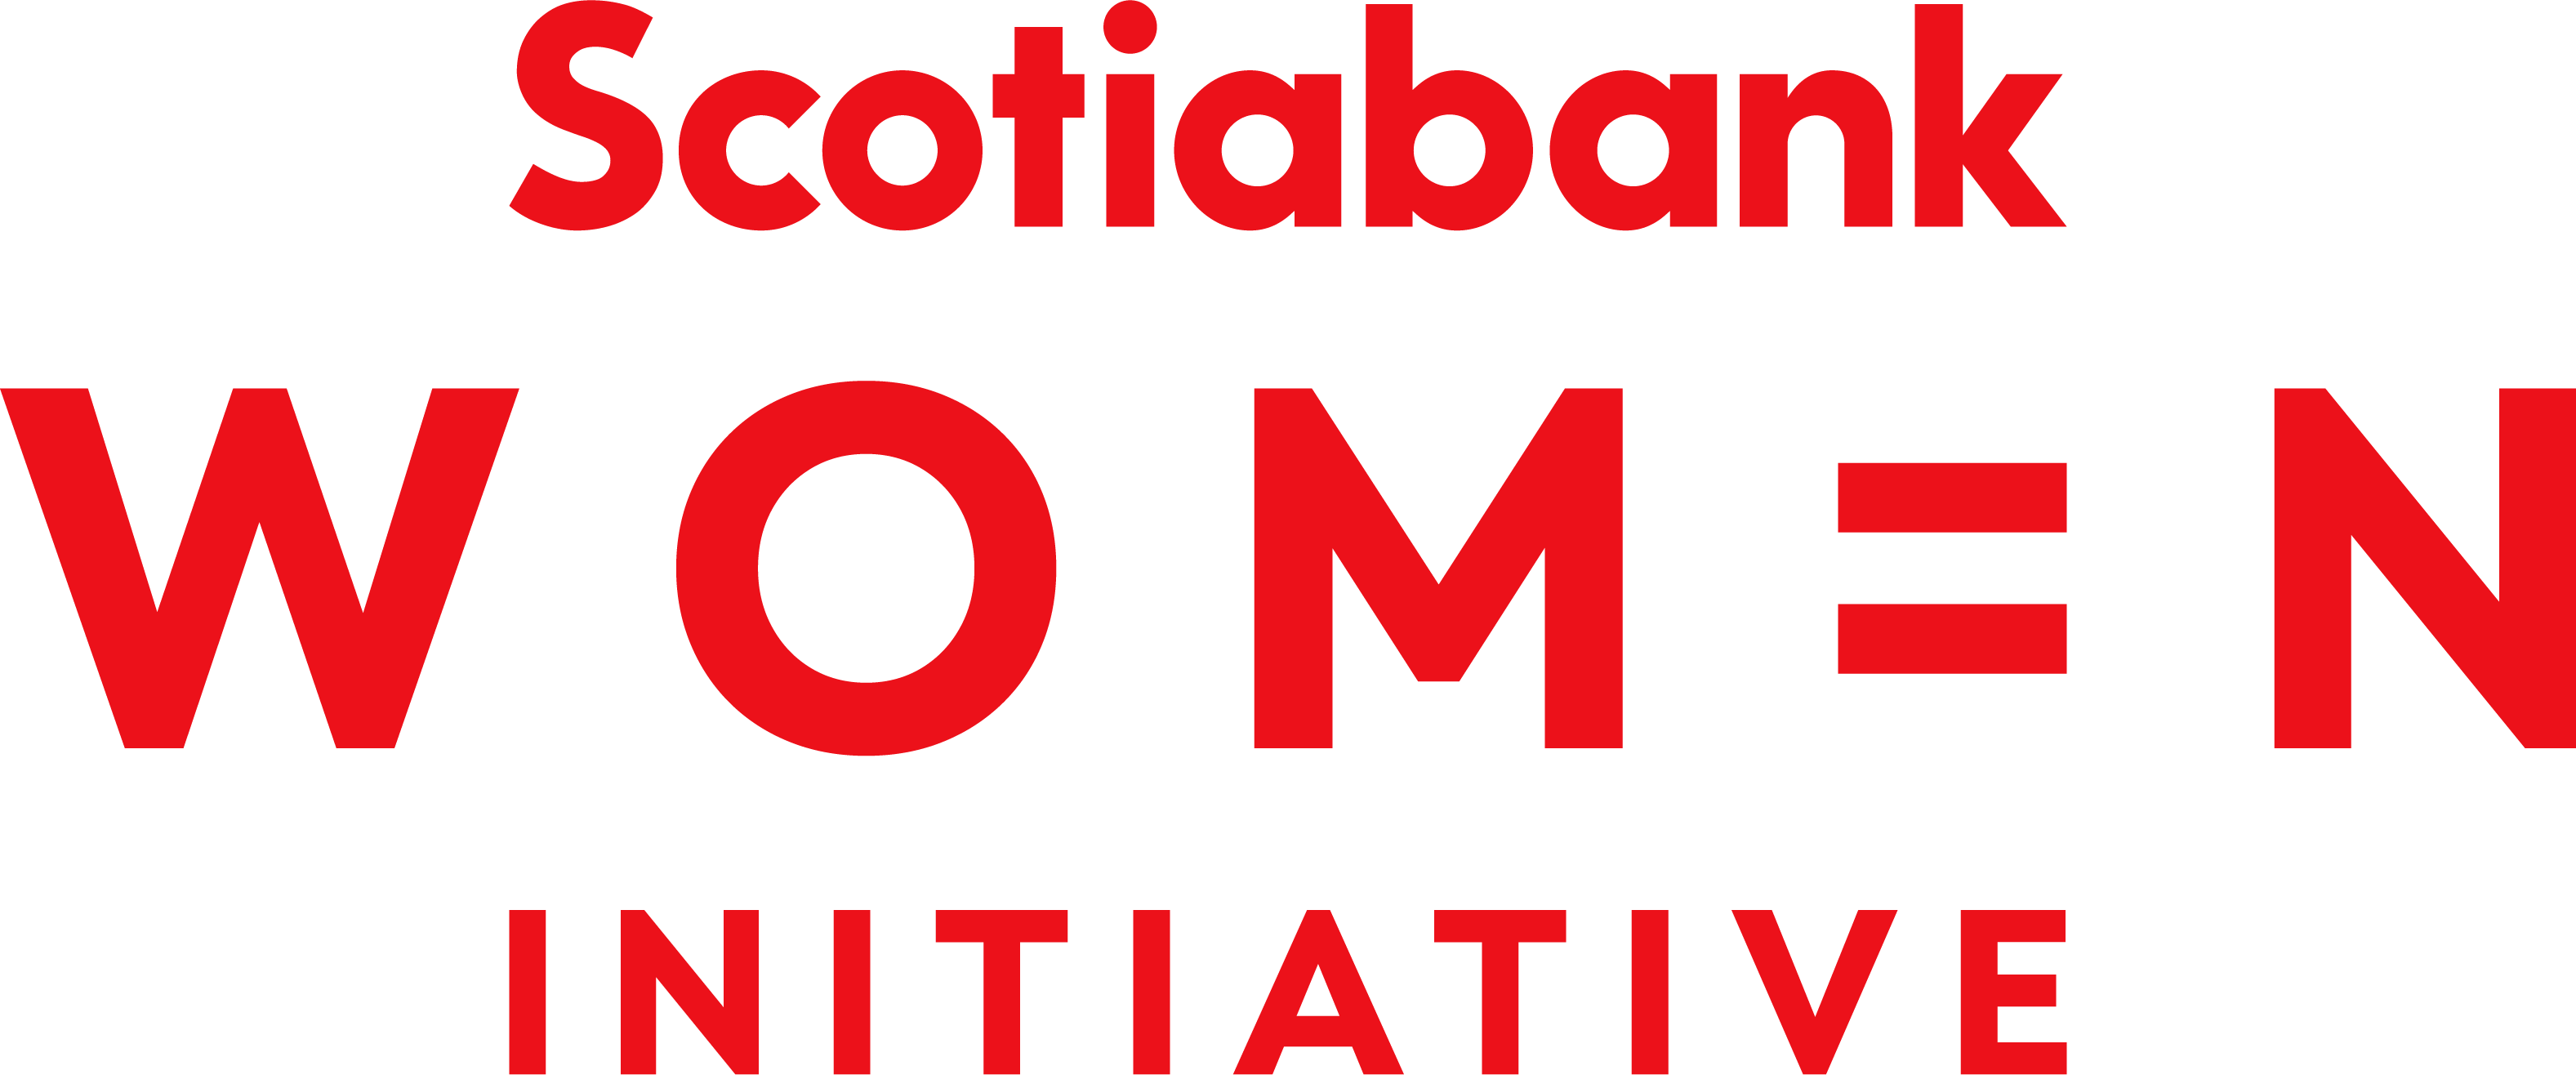 Scotiabank Women Initiative Logo